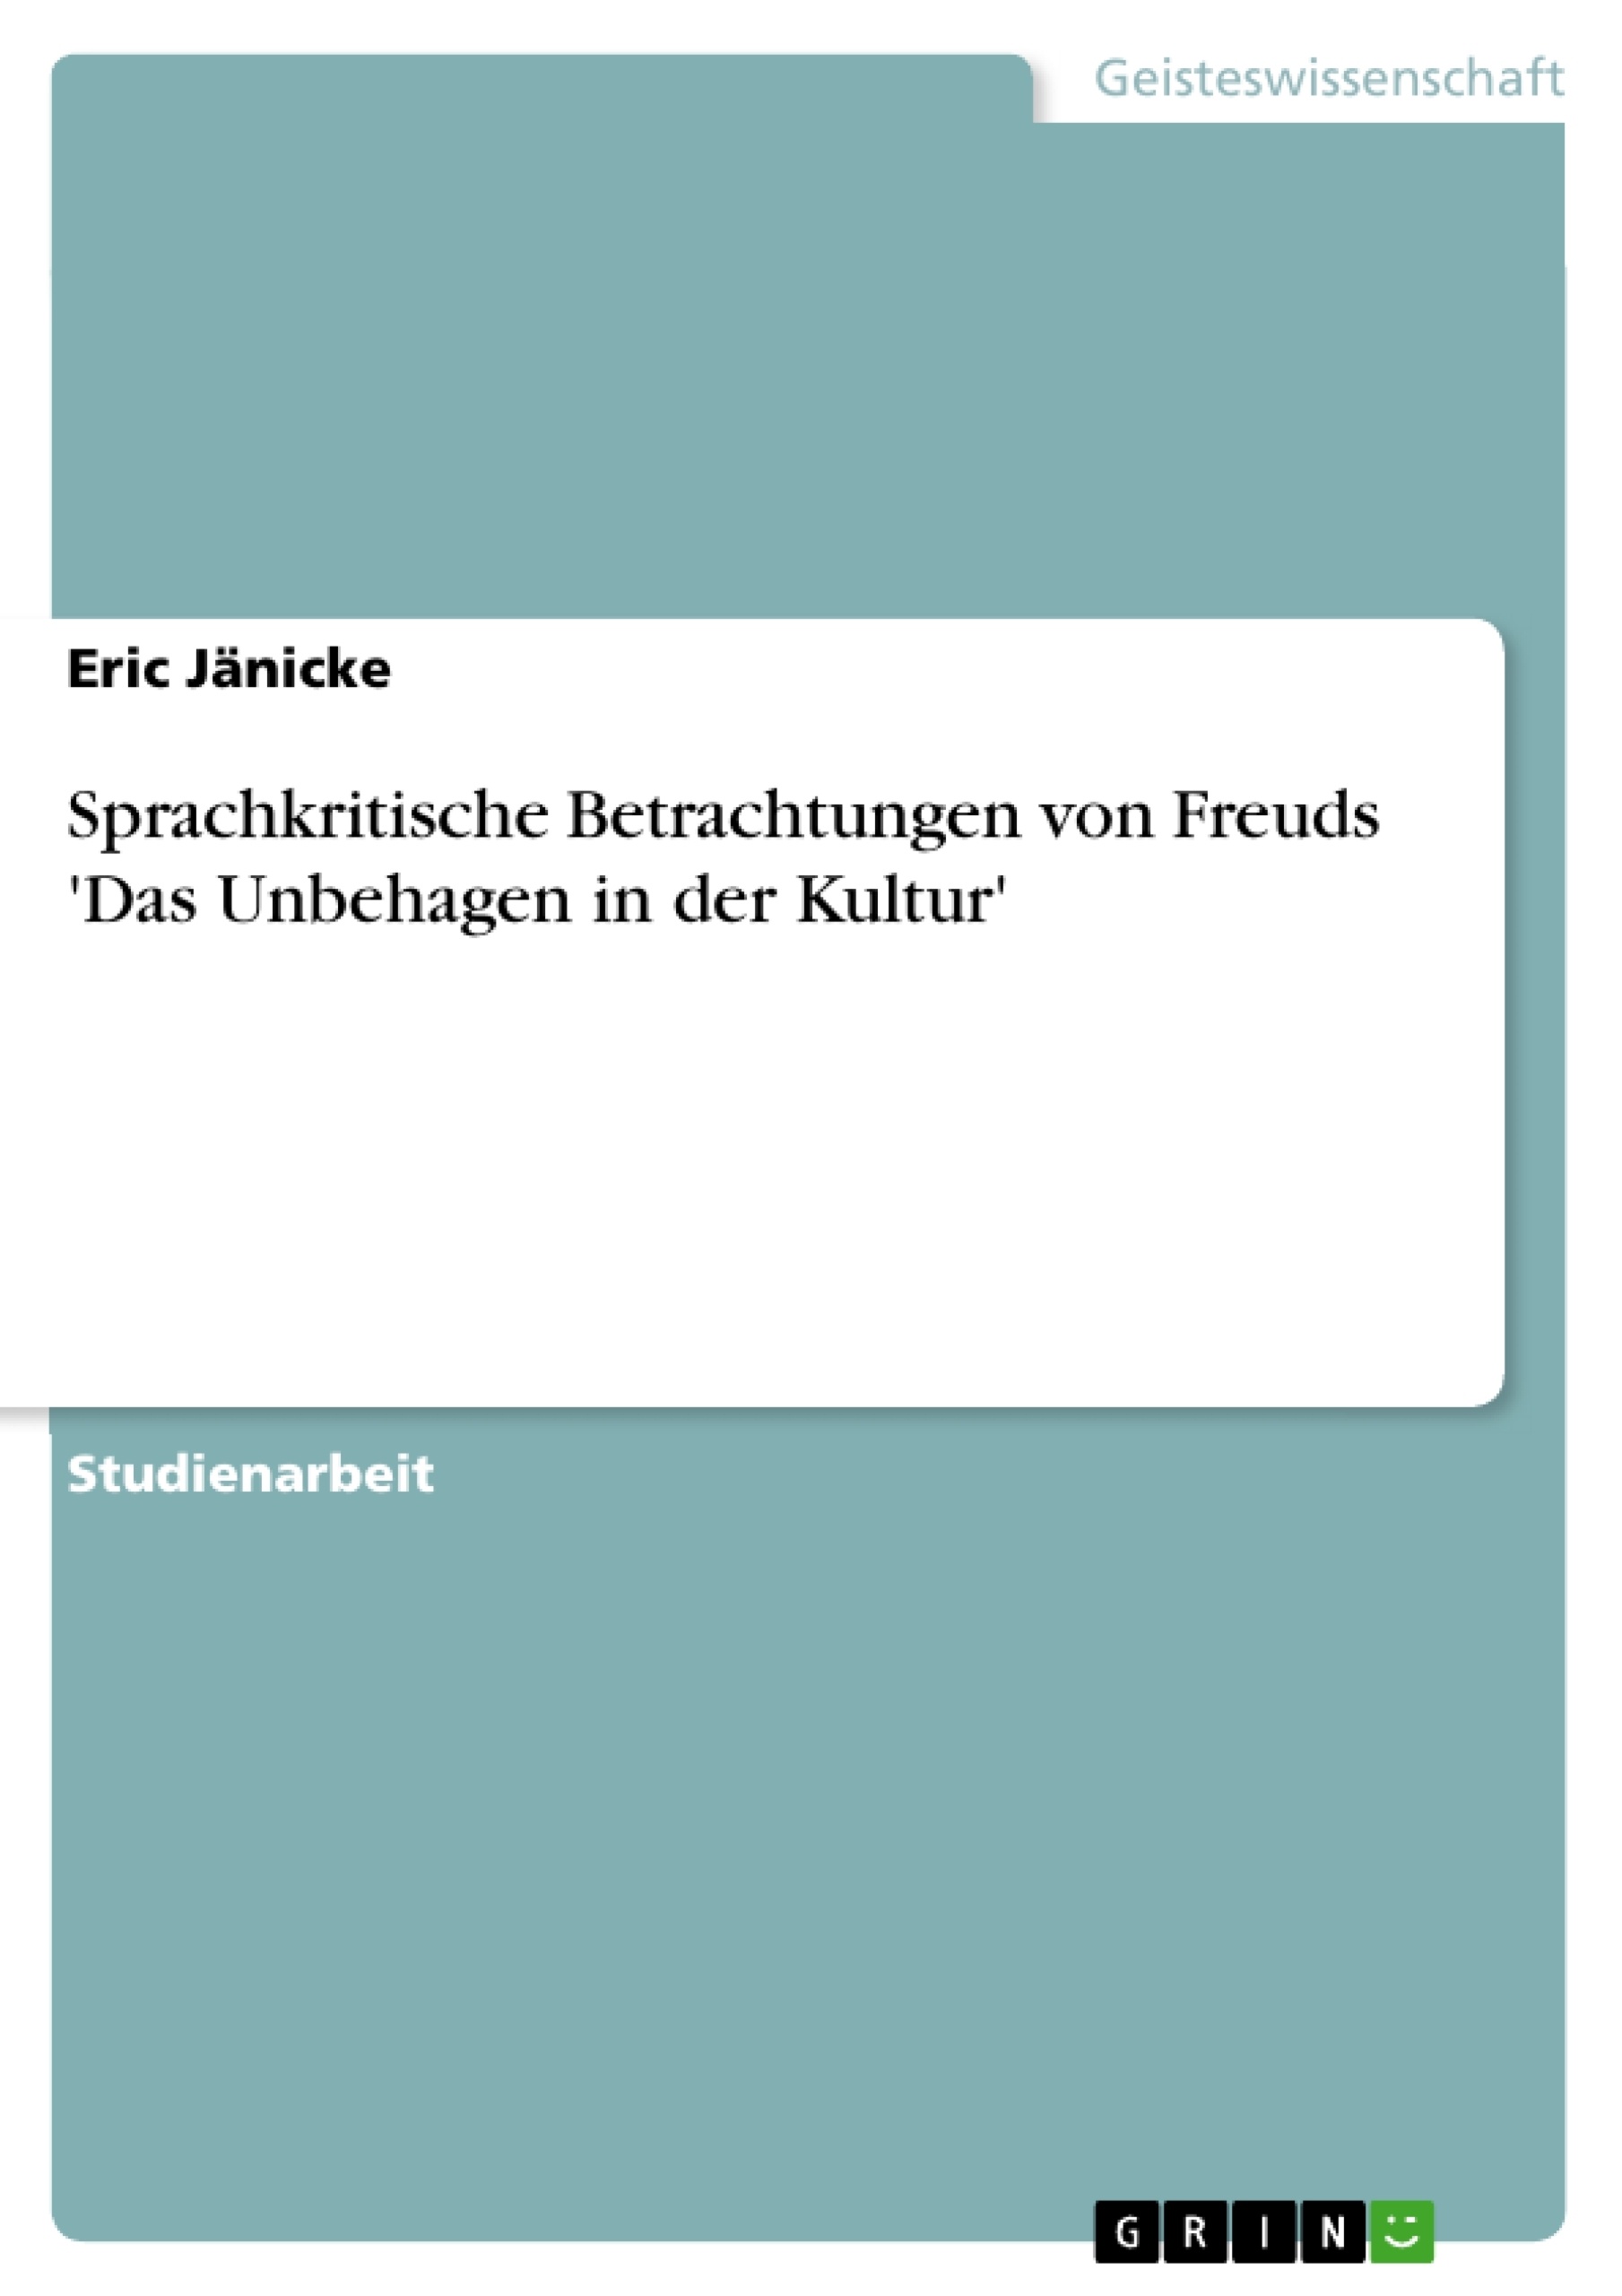 Title: Sprachkritische Betrachtungen von Freuds 'Das Unbehagen in der Kultur'